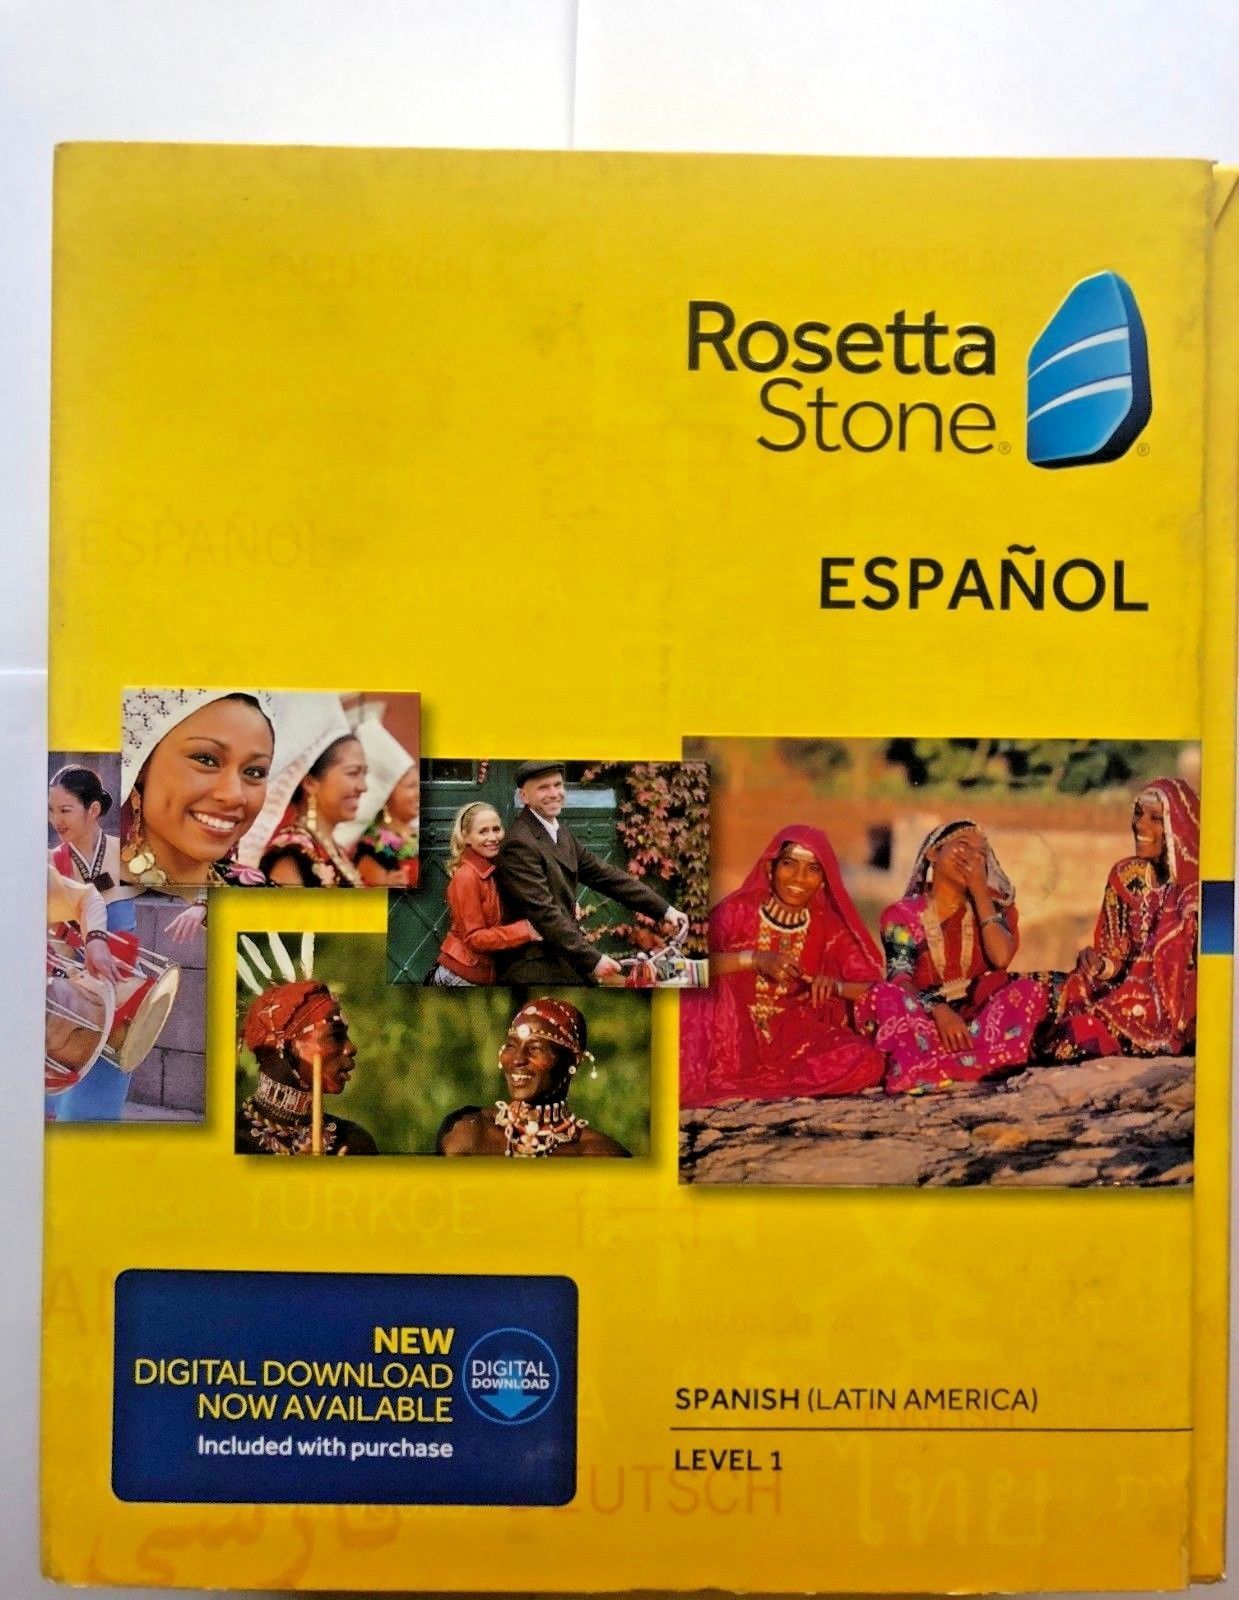 rosetta stone totale online